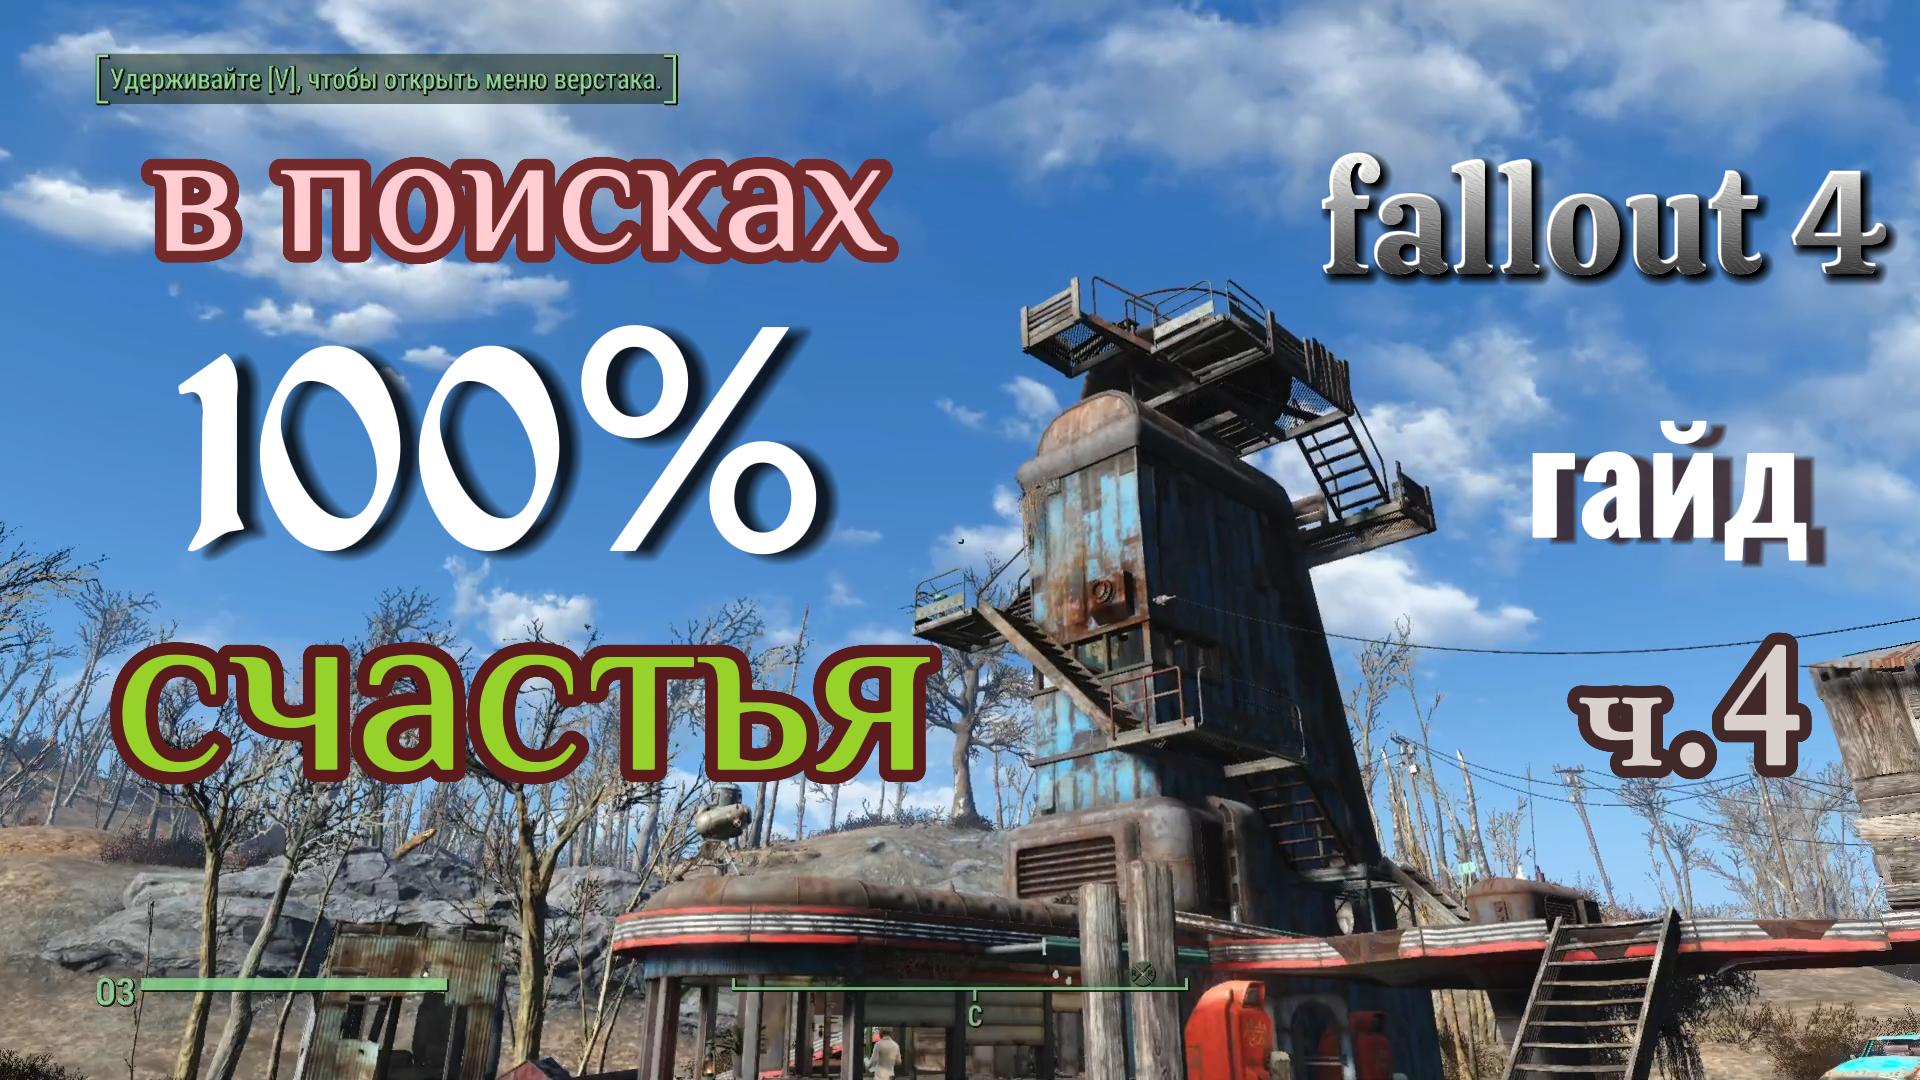 Fallout 4. 100% СЧАСТЬЯ ч.4(гайд).